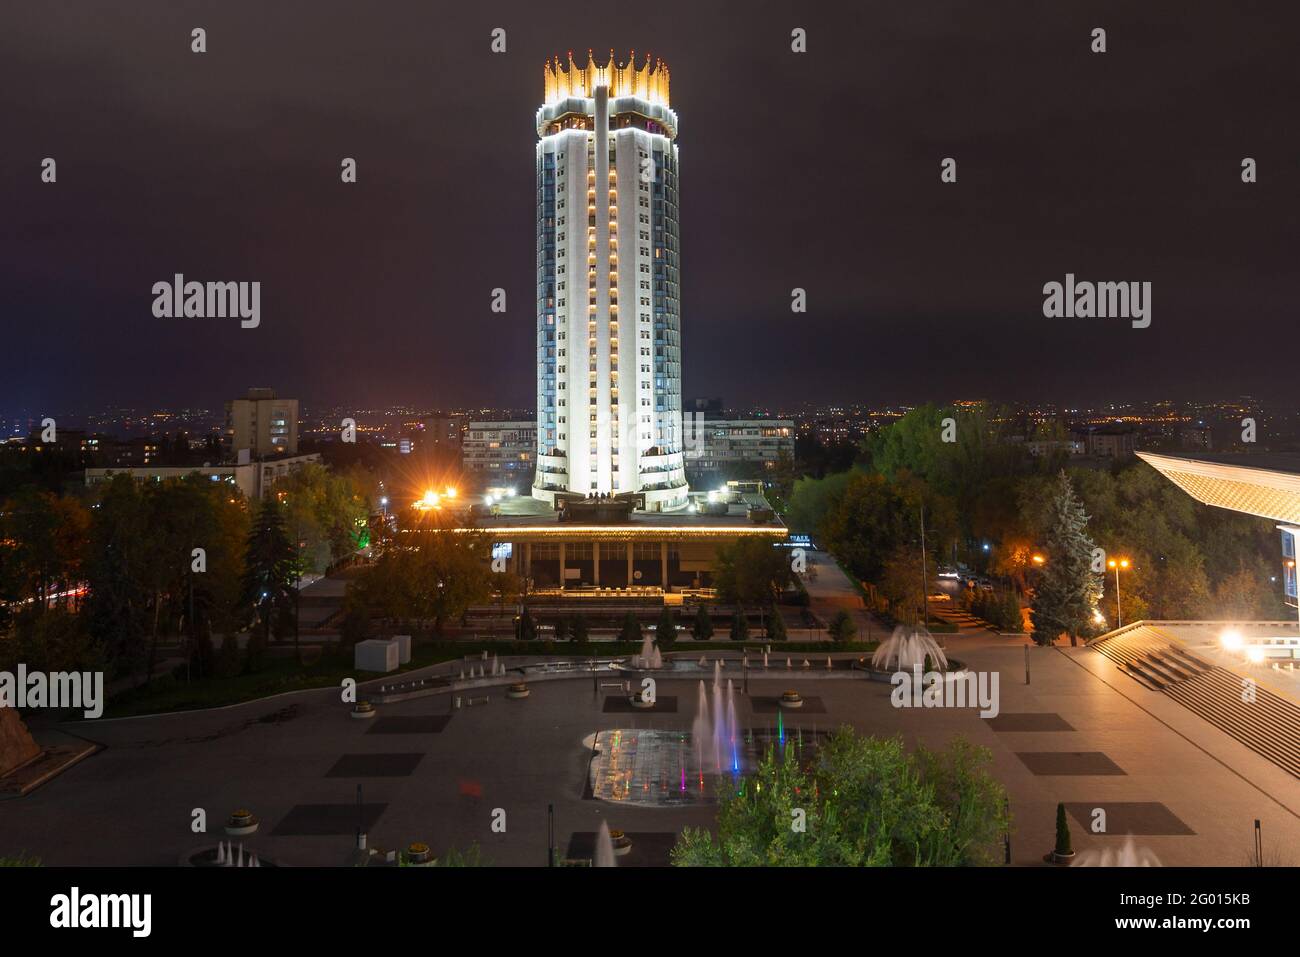 Kazakhstan Hôtel tour à la place Abai, Almaty la nuit. Végétation et fontaines d'eau sur la place Abay en face du Palais de la République. Banque D'Images